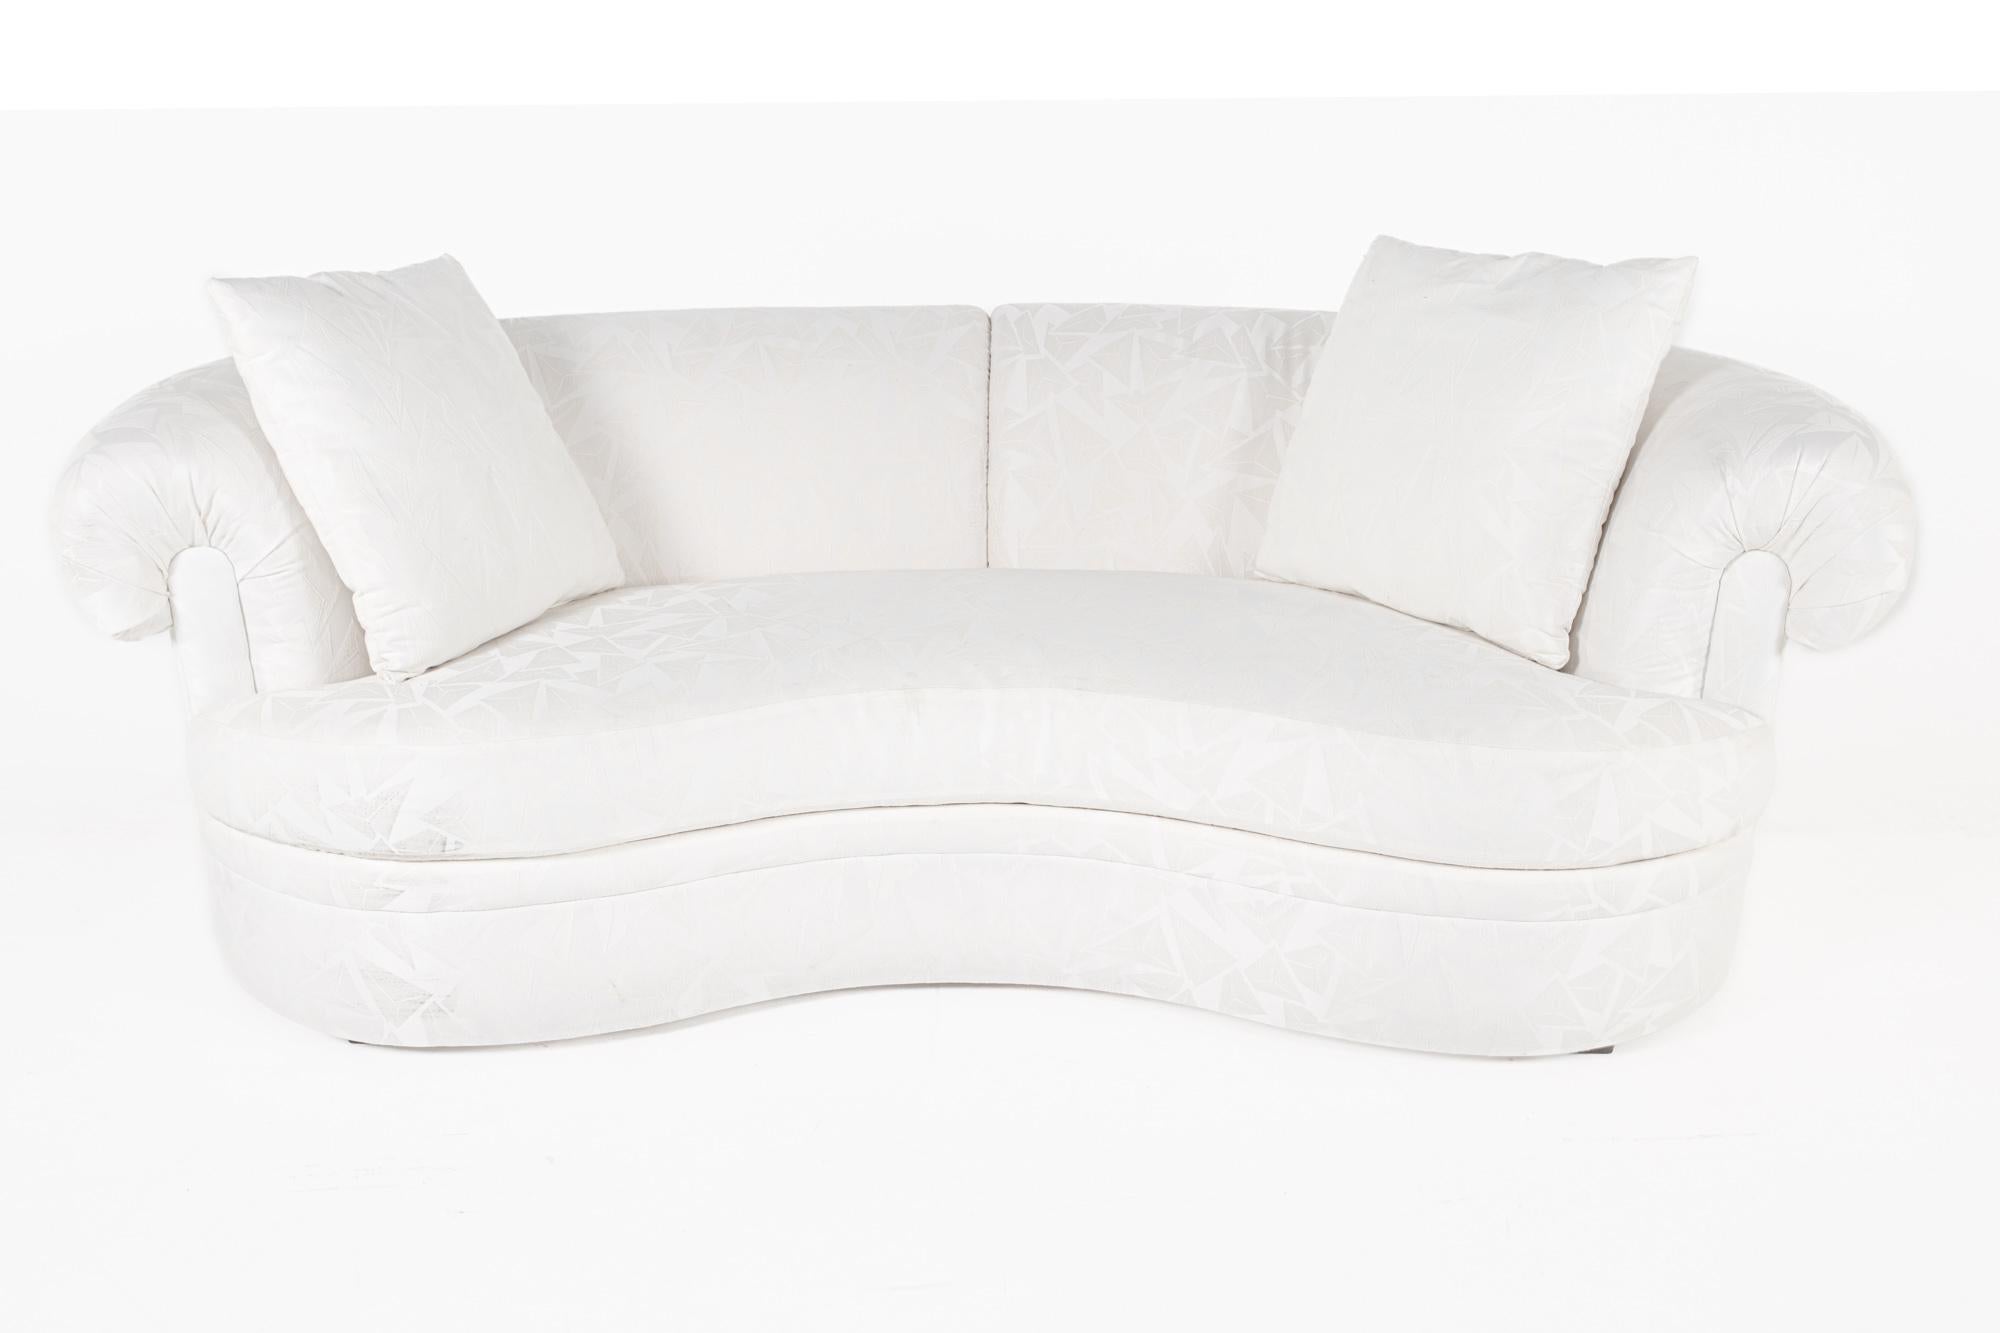 Bernhardt White gepolstertes geschwungenes Sofa

Dieses Sofa misst: 90 breit x 44 tief x 33 Zoll hoch, mit einer Sitzhöhe von 18 und Armhöhe von 28 Zoll

Dieses Sofa ist in einem ausgezeichneten Vintage-Zustand mit kleinen Spuren, Dellen und